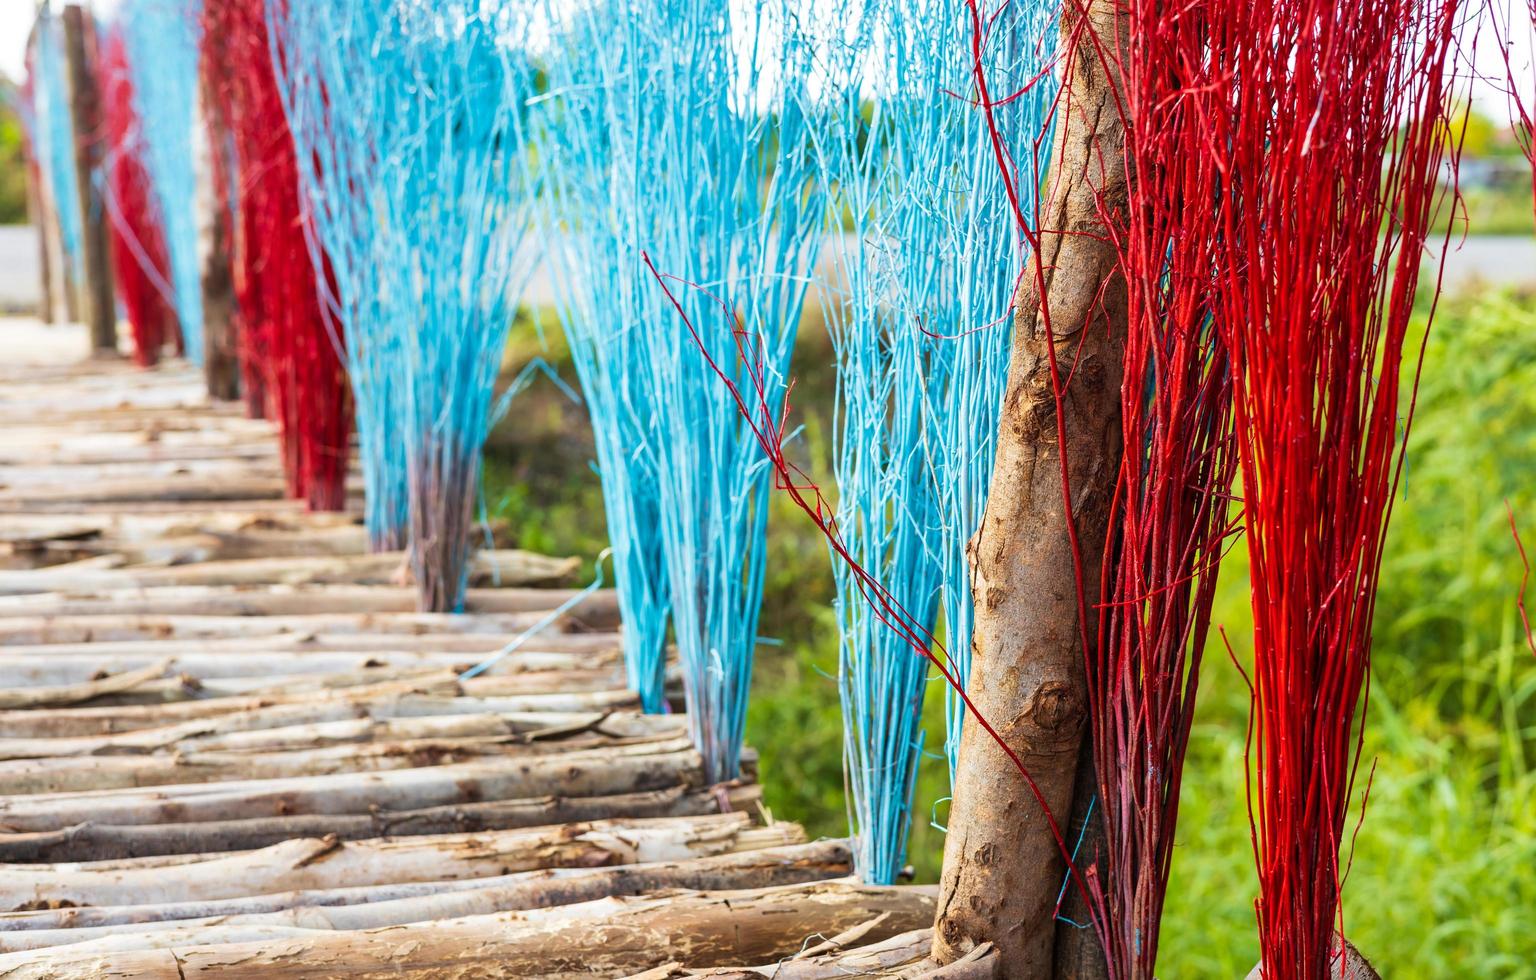 hierboven, een close-up, een overvloed aan eucalyptusbruggen versierd met felgekleurde twijgen. foto